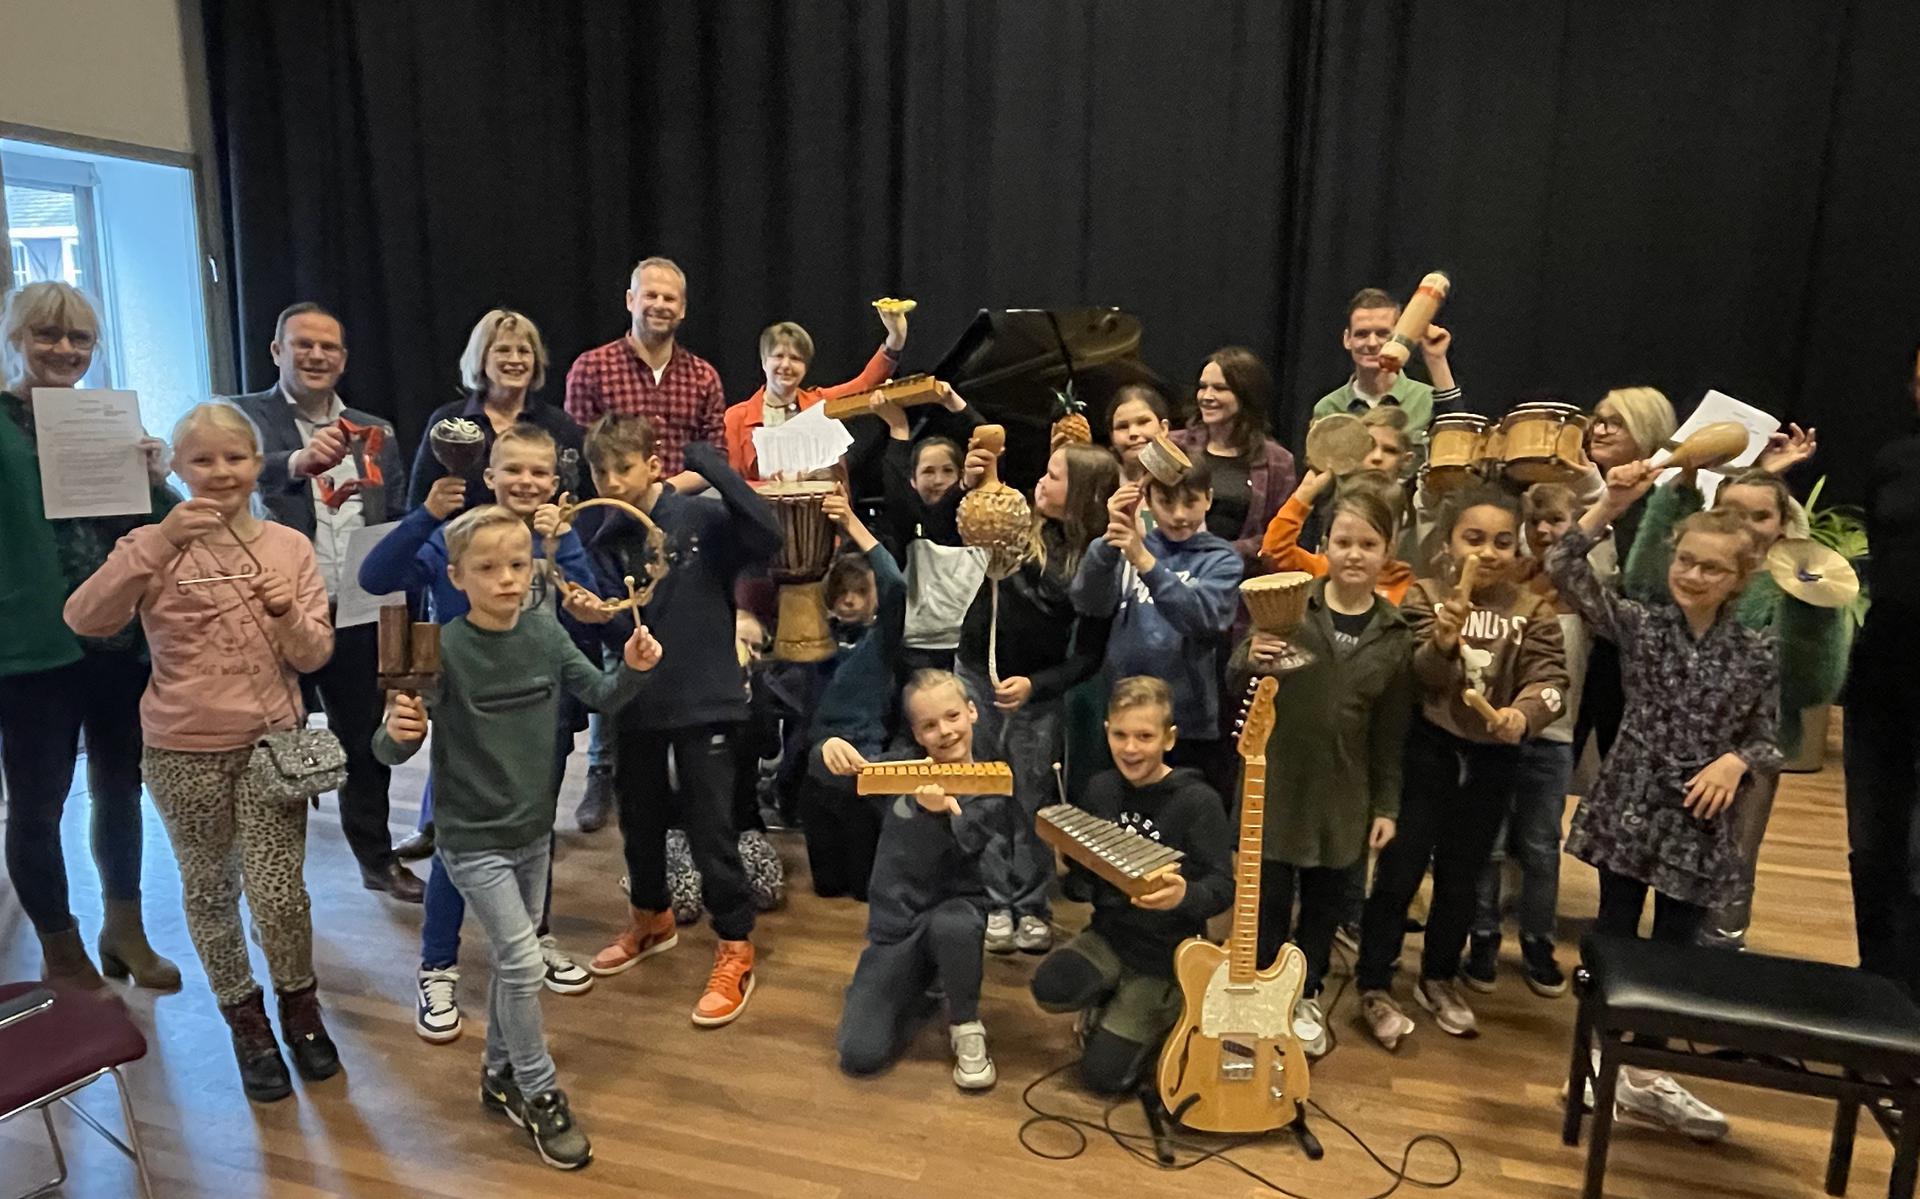 Begeleid door veel muziek tekenden de scholen woensdag voor opnieuw vier jaar hoogwaardig cultuuronderwijs in Meppel. 